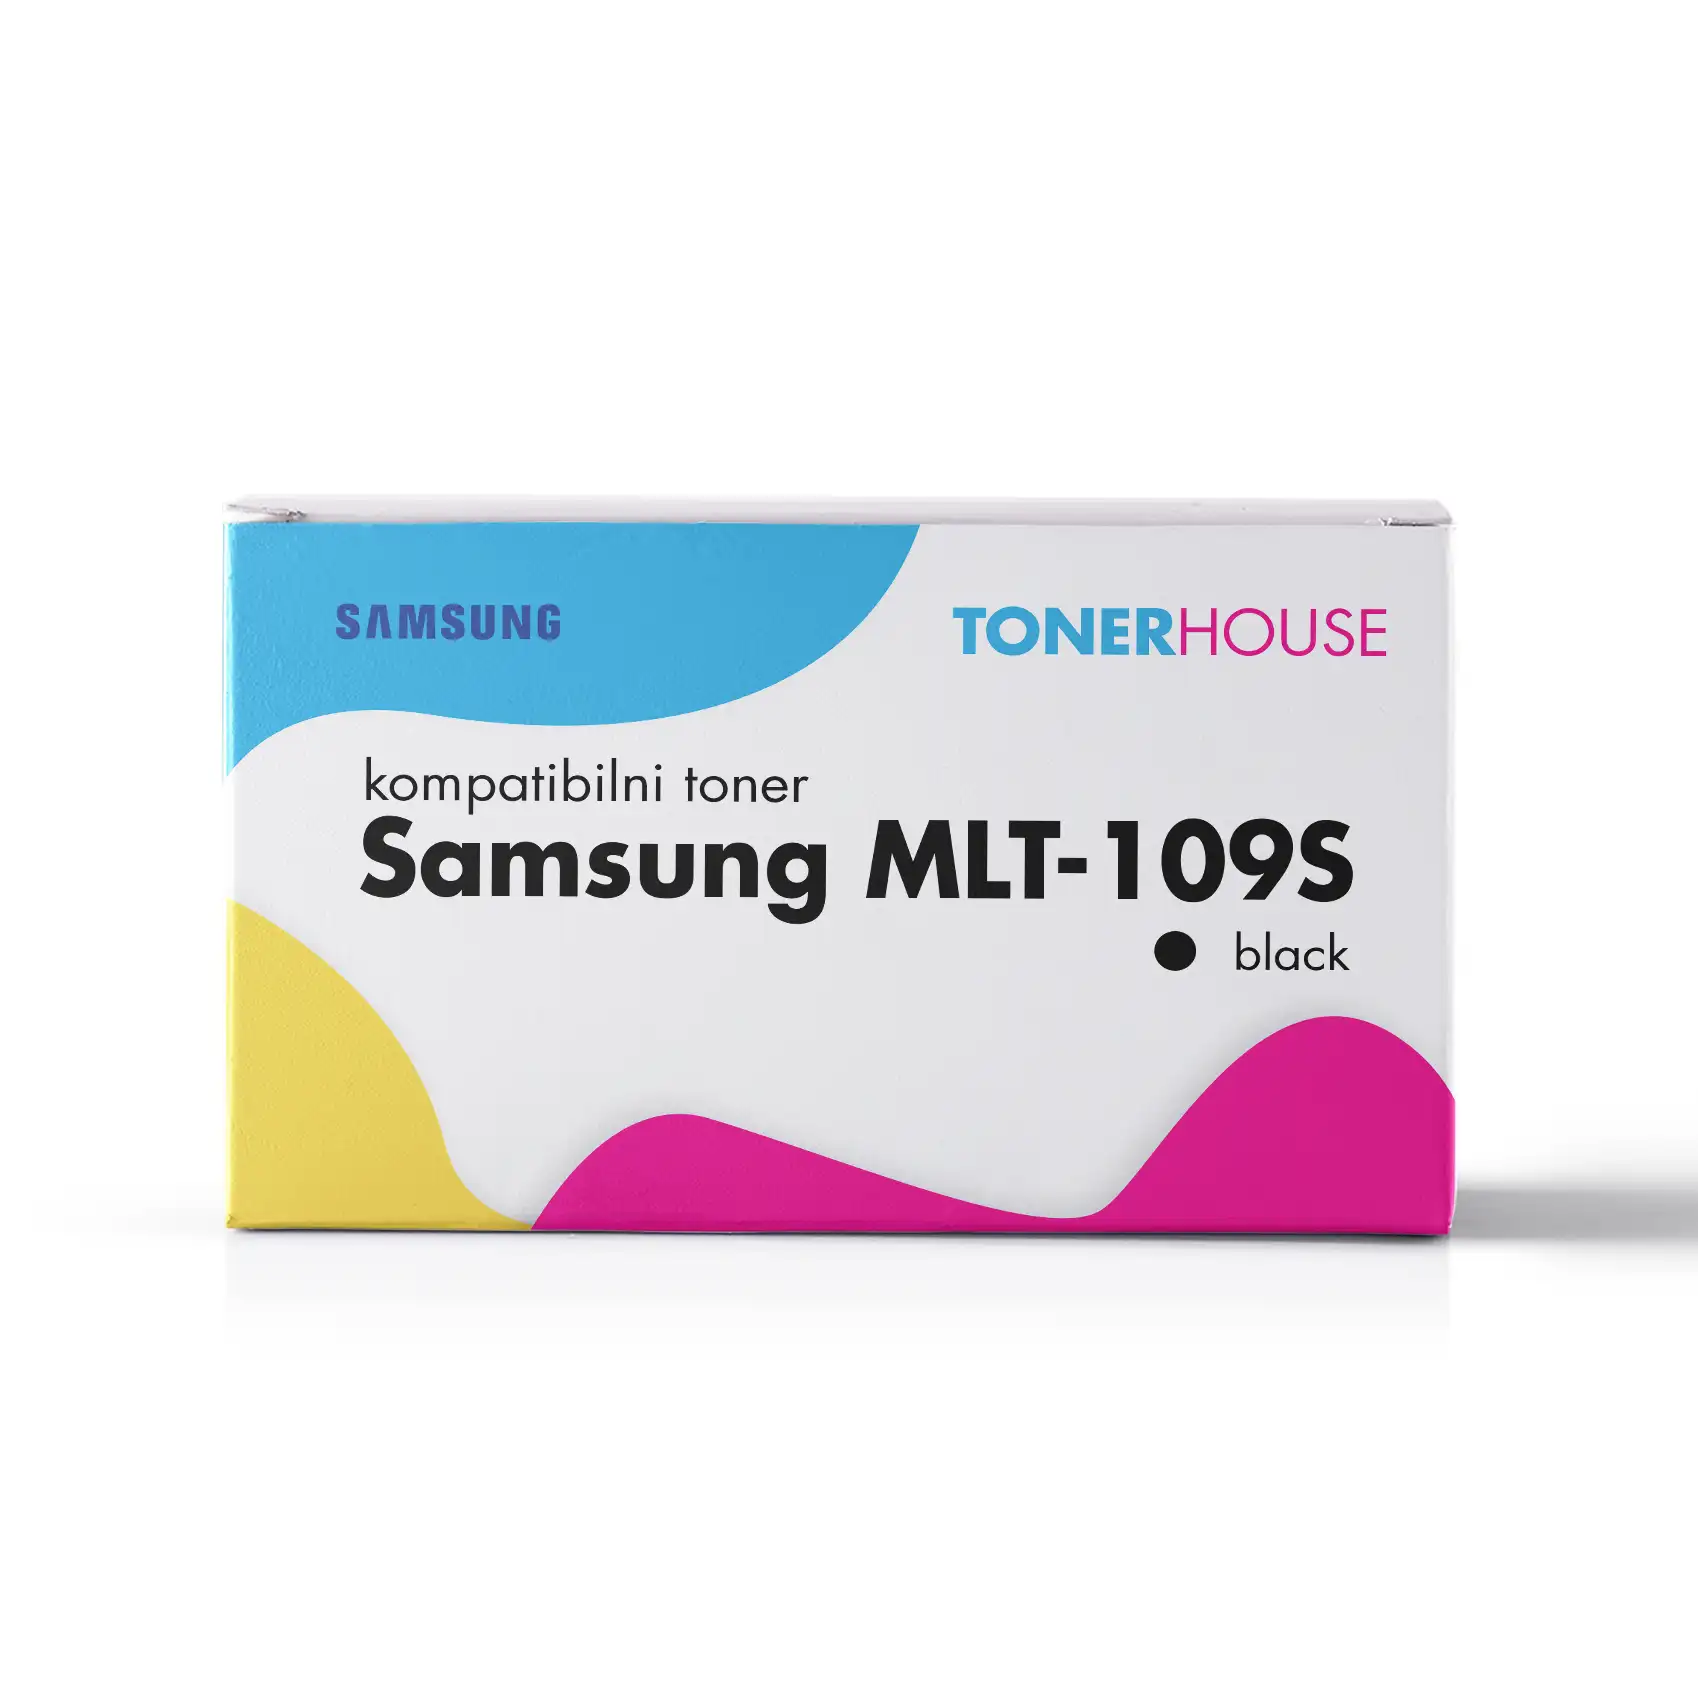 Samsung MLT-D109S Toner Kompatibilni / SCX-4300